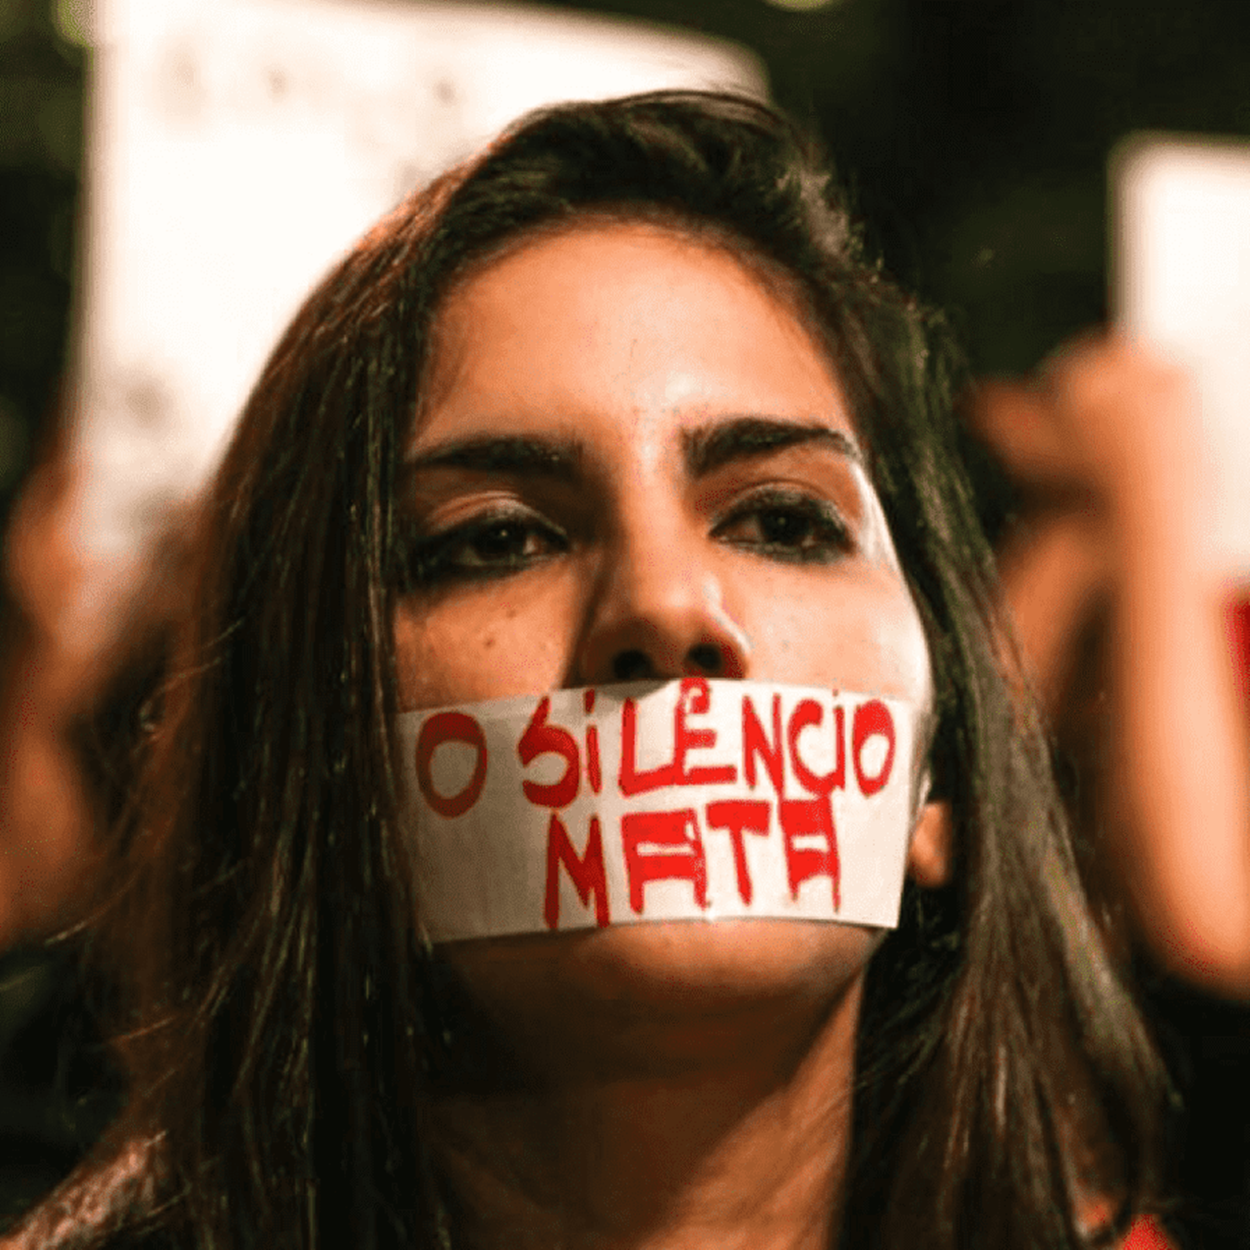 Mulher com fita na boca, escrito: "O silêncio mata"